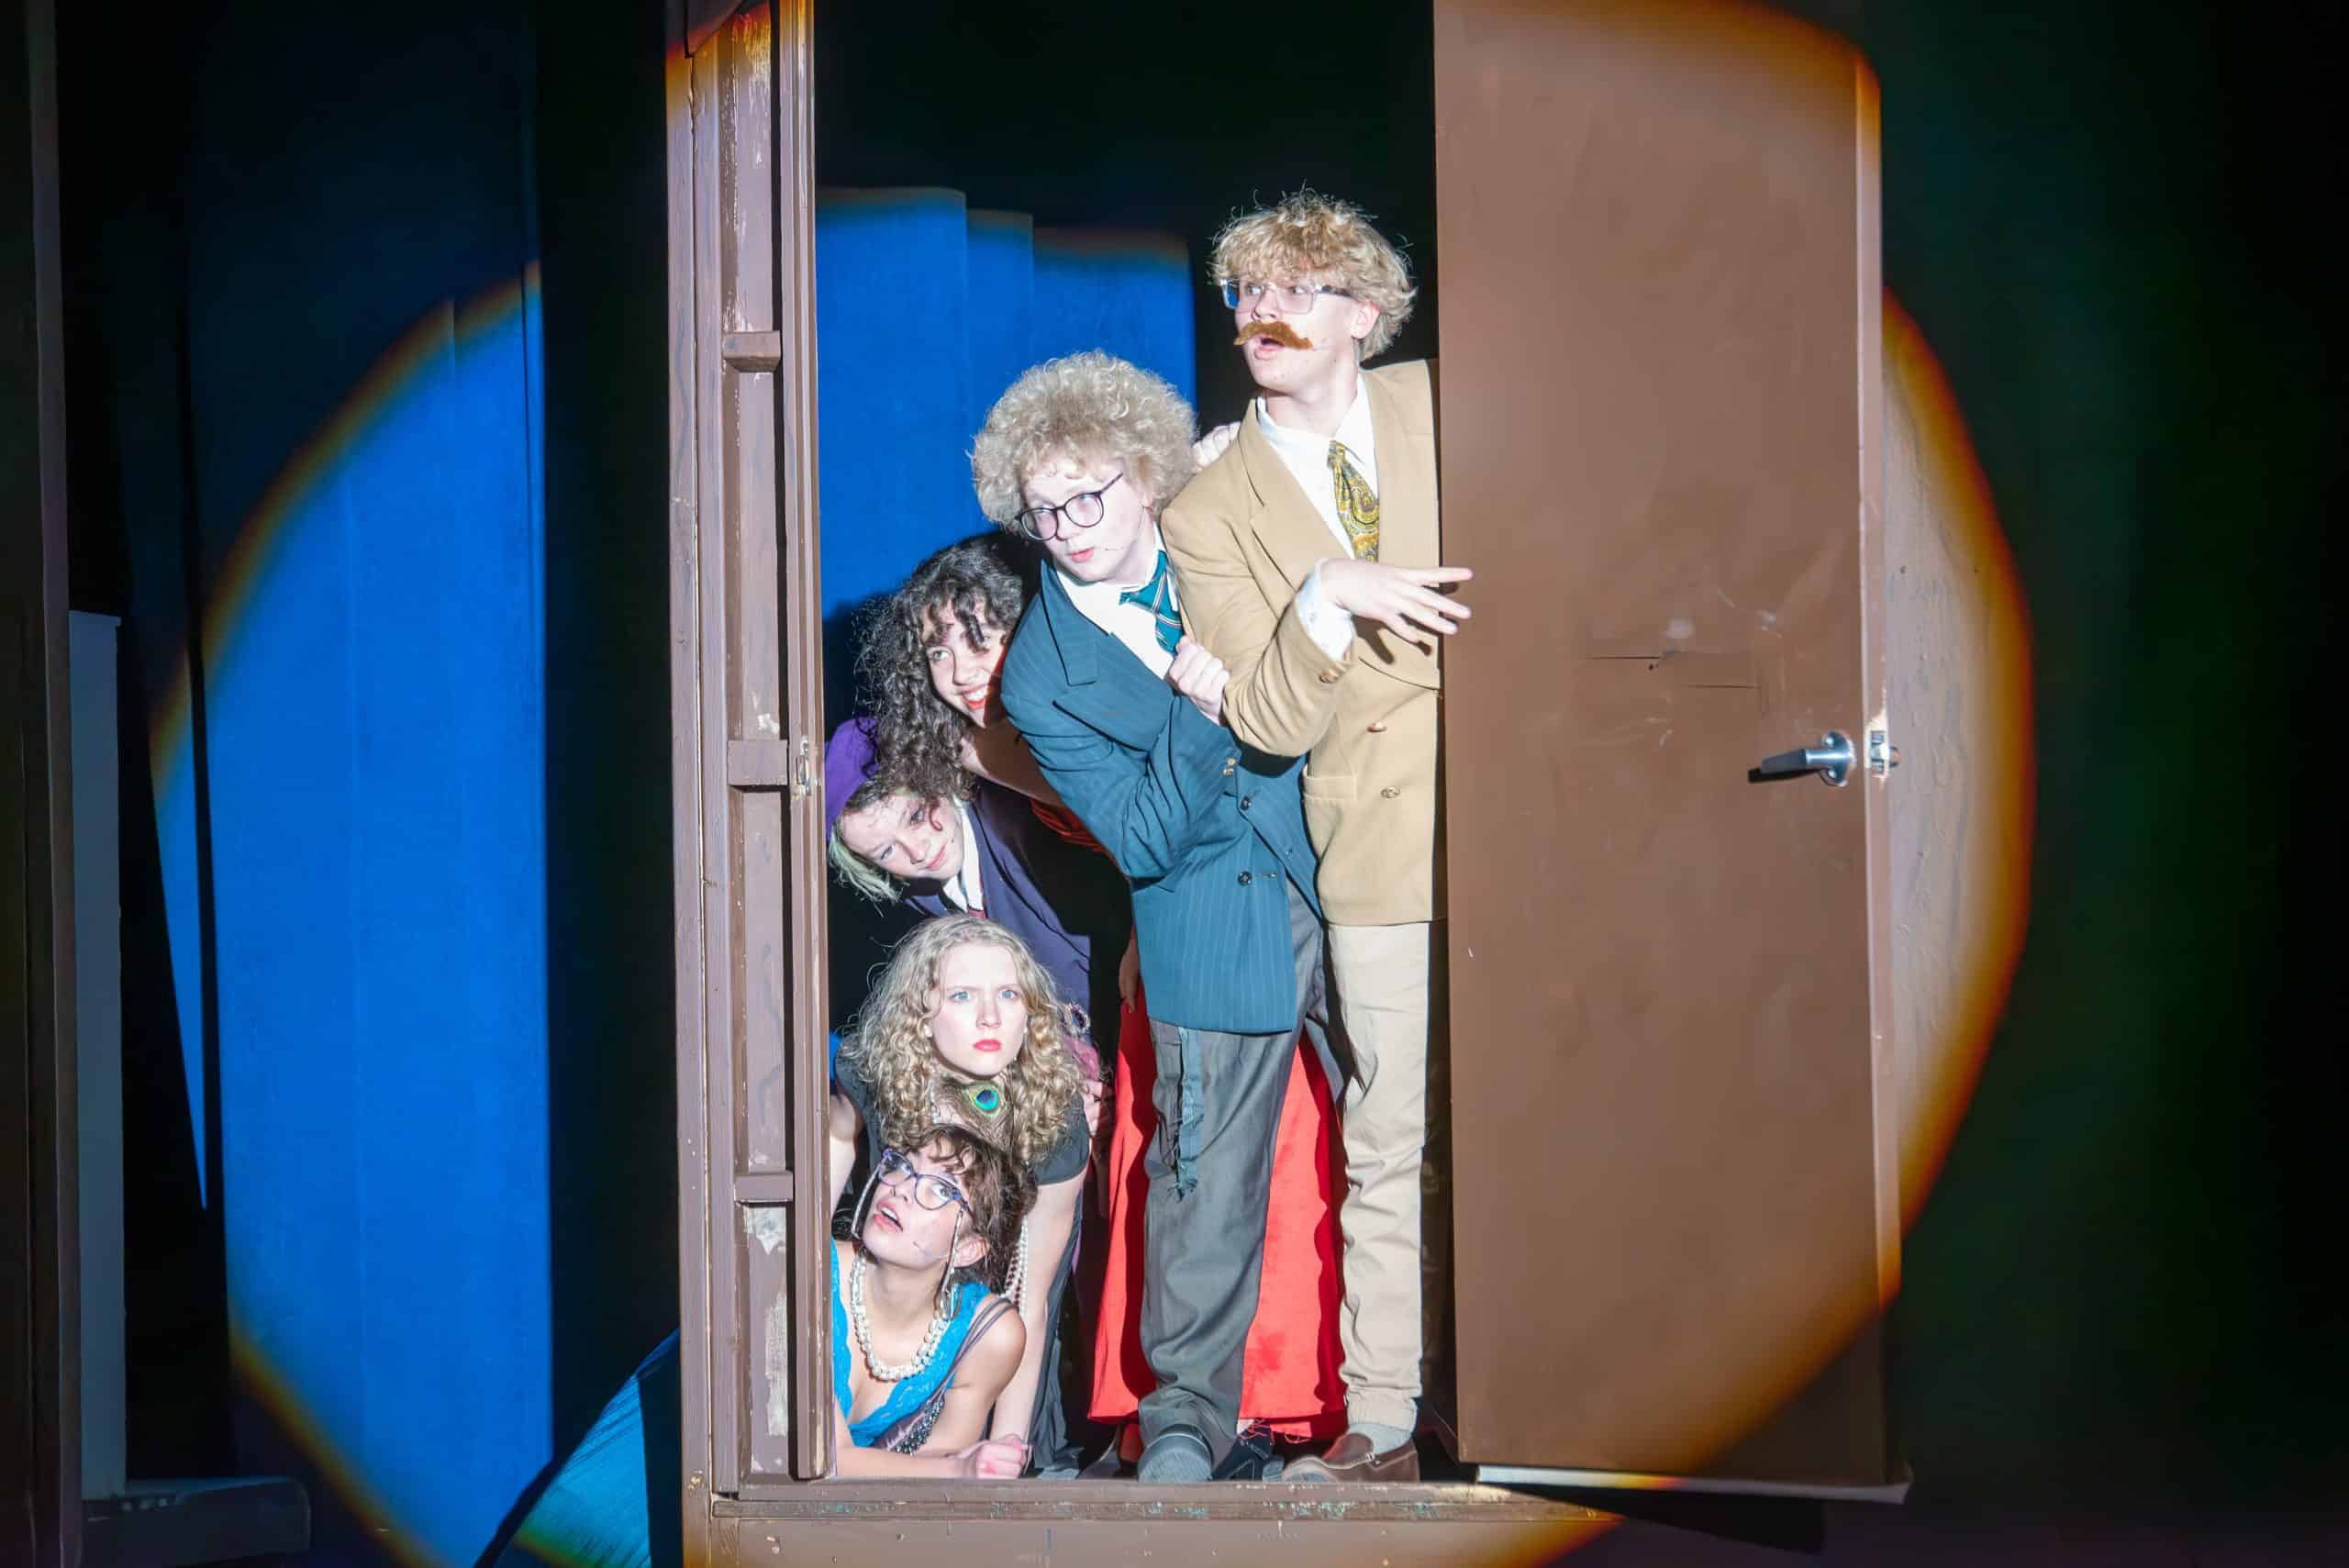 Seis estudiantes del club de teatro de Longmont se asoman por una puerta en el decorado del escenario. Una chica está tumbada en el suelo y los demás estudiantes están apilados encima de ella, de sentados a de pie.